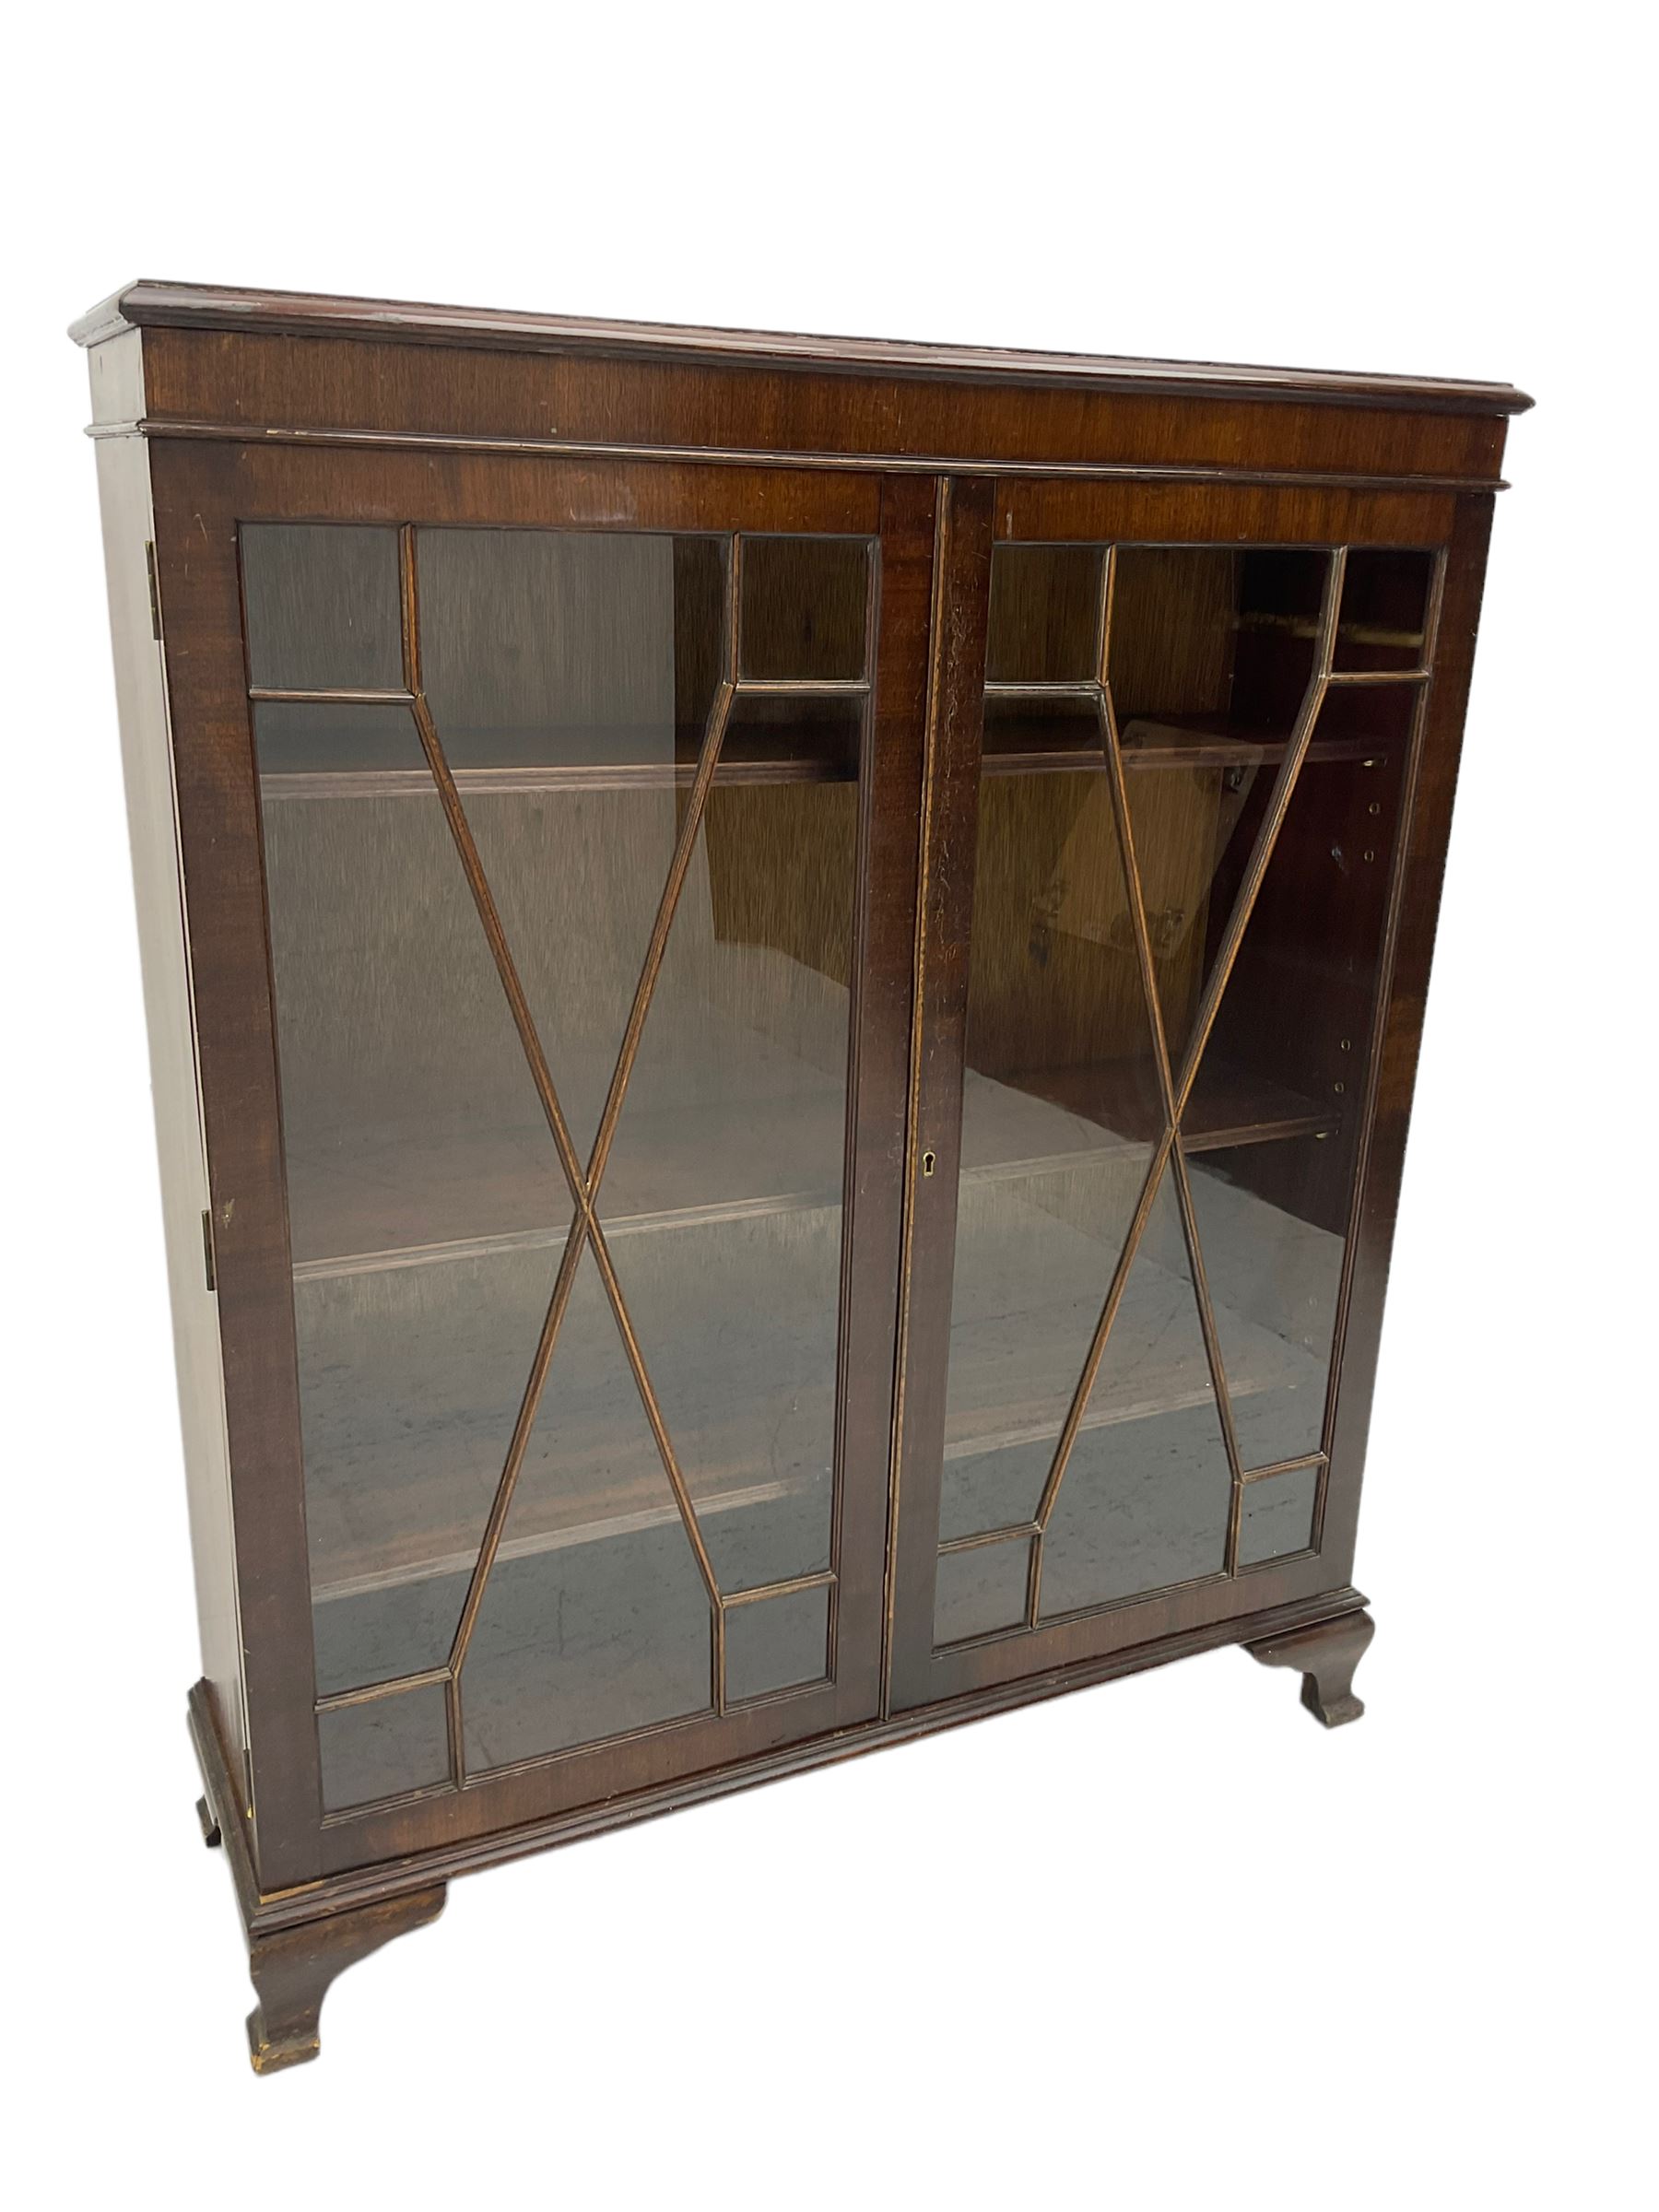 Early 20th century mahogany glazed display cabinet